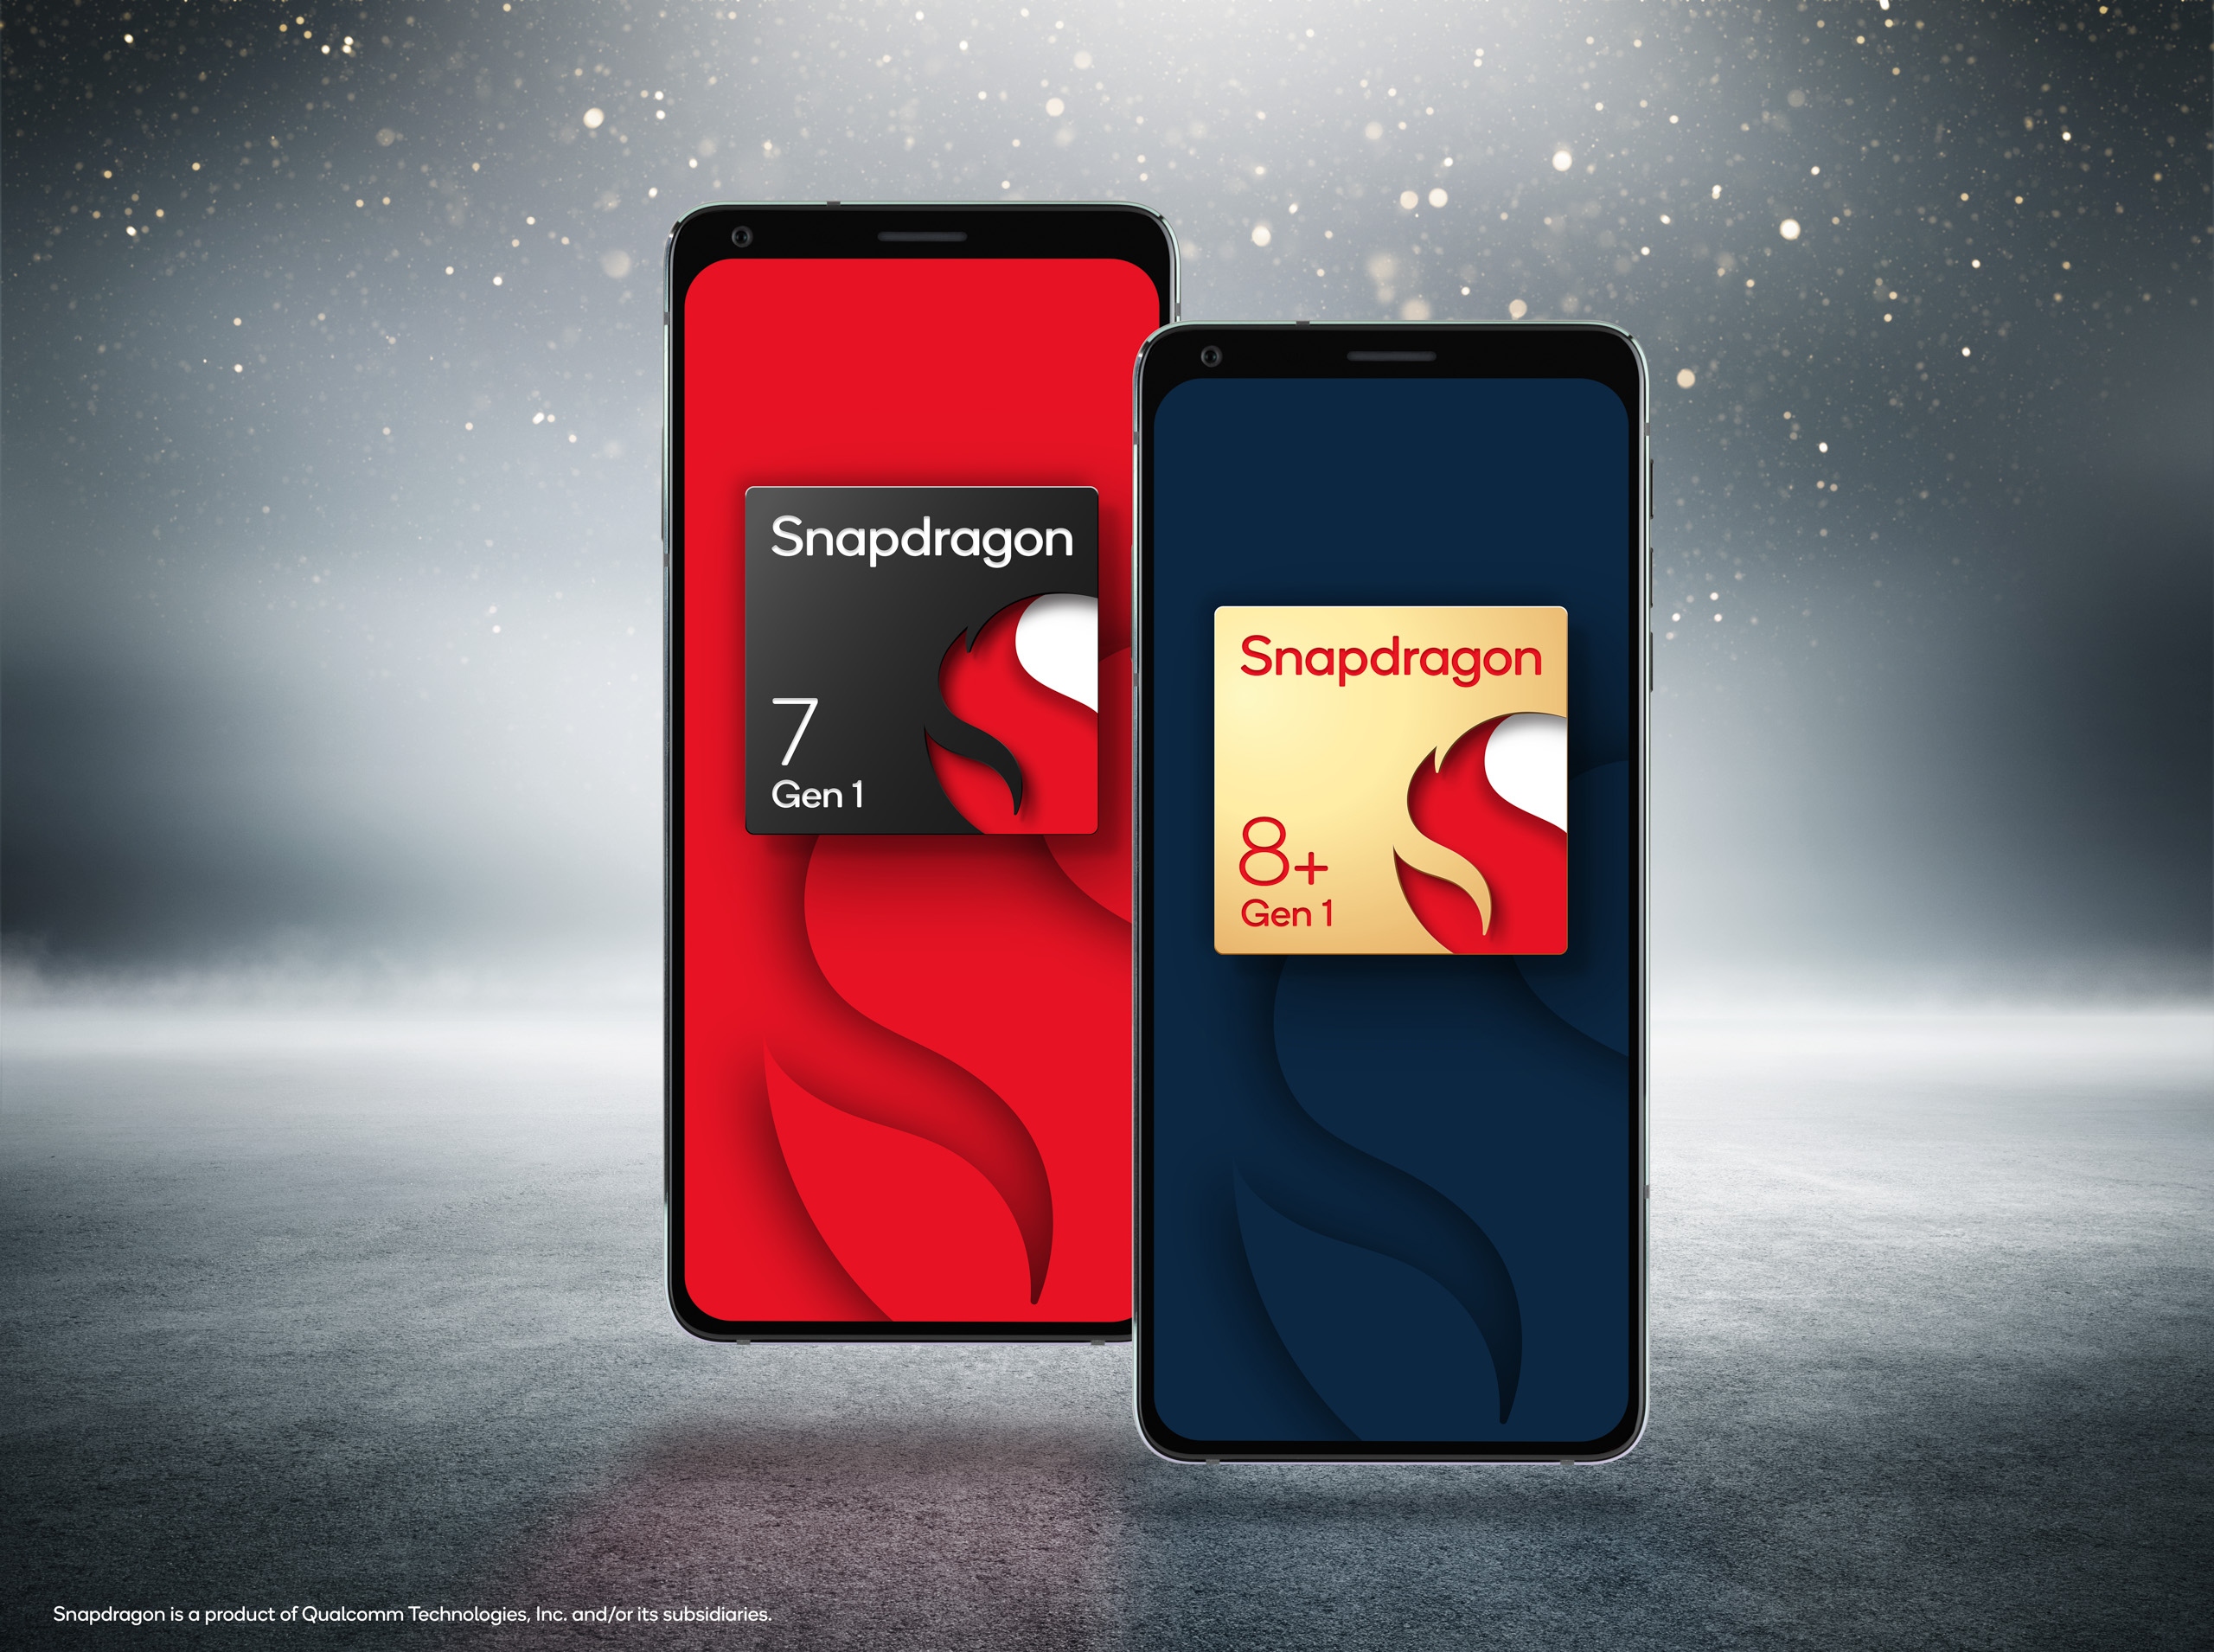 Nền tảng di động Snapdragon 8+ Gen 1 và Snapdragon 7 Gen 1 ra mắt